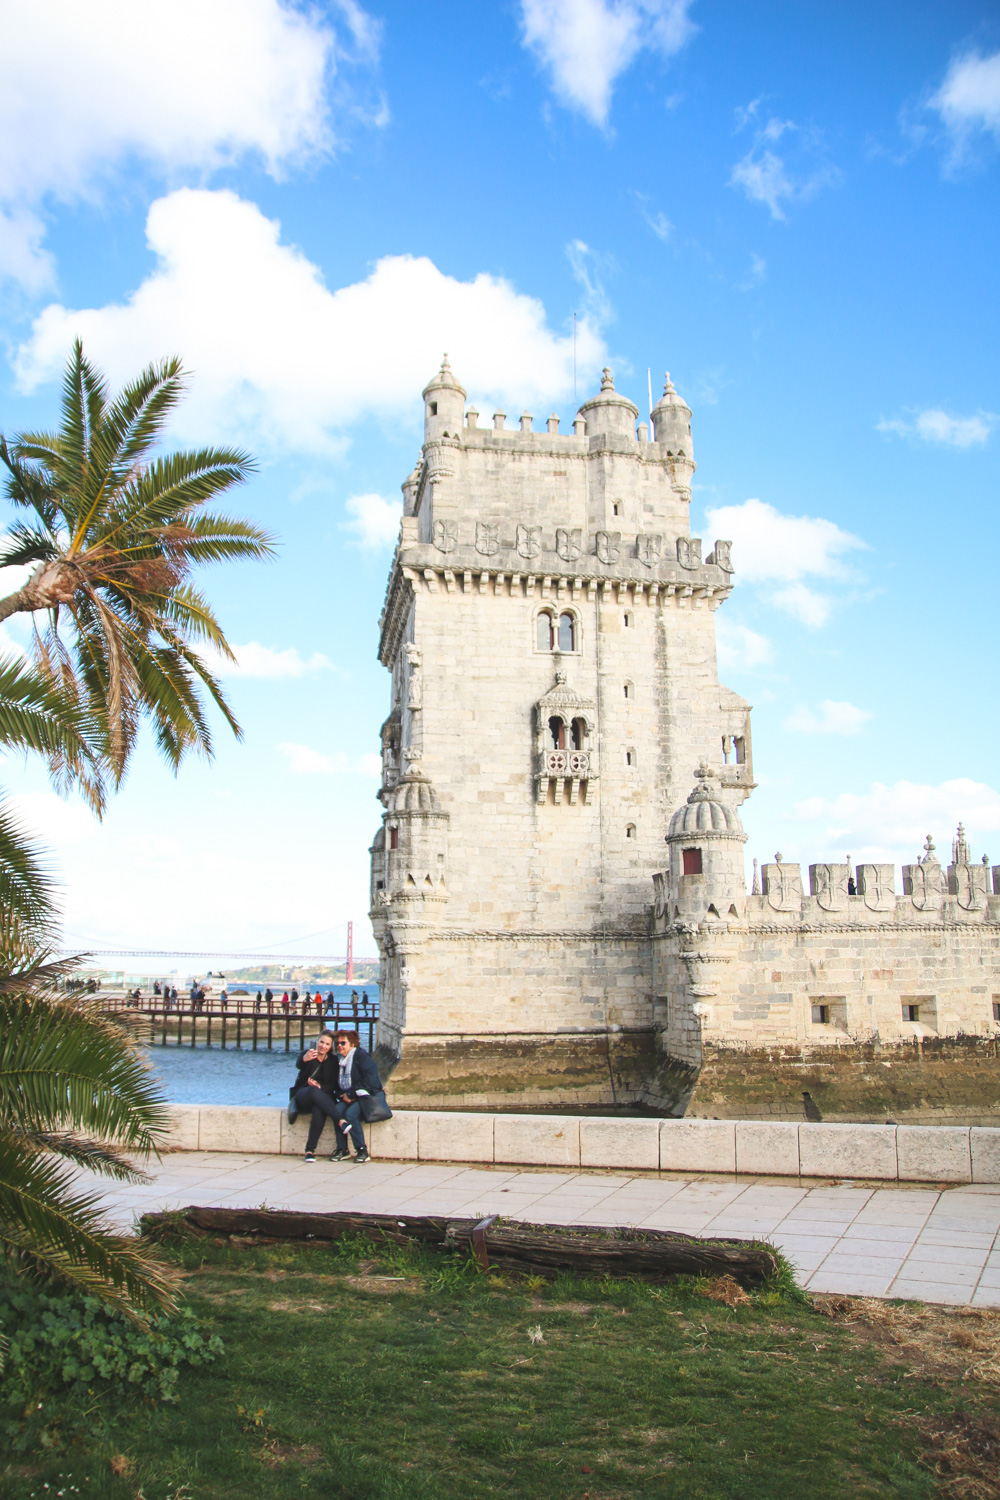 Belem Tower, Belem, Lisbon - Portugal